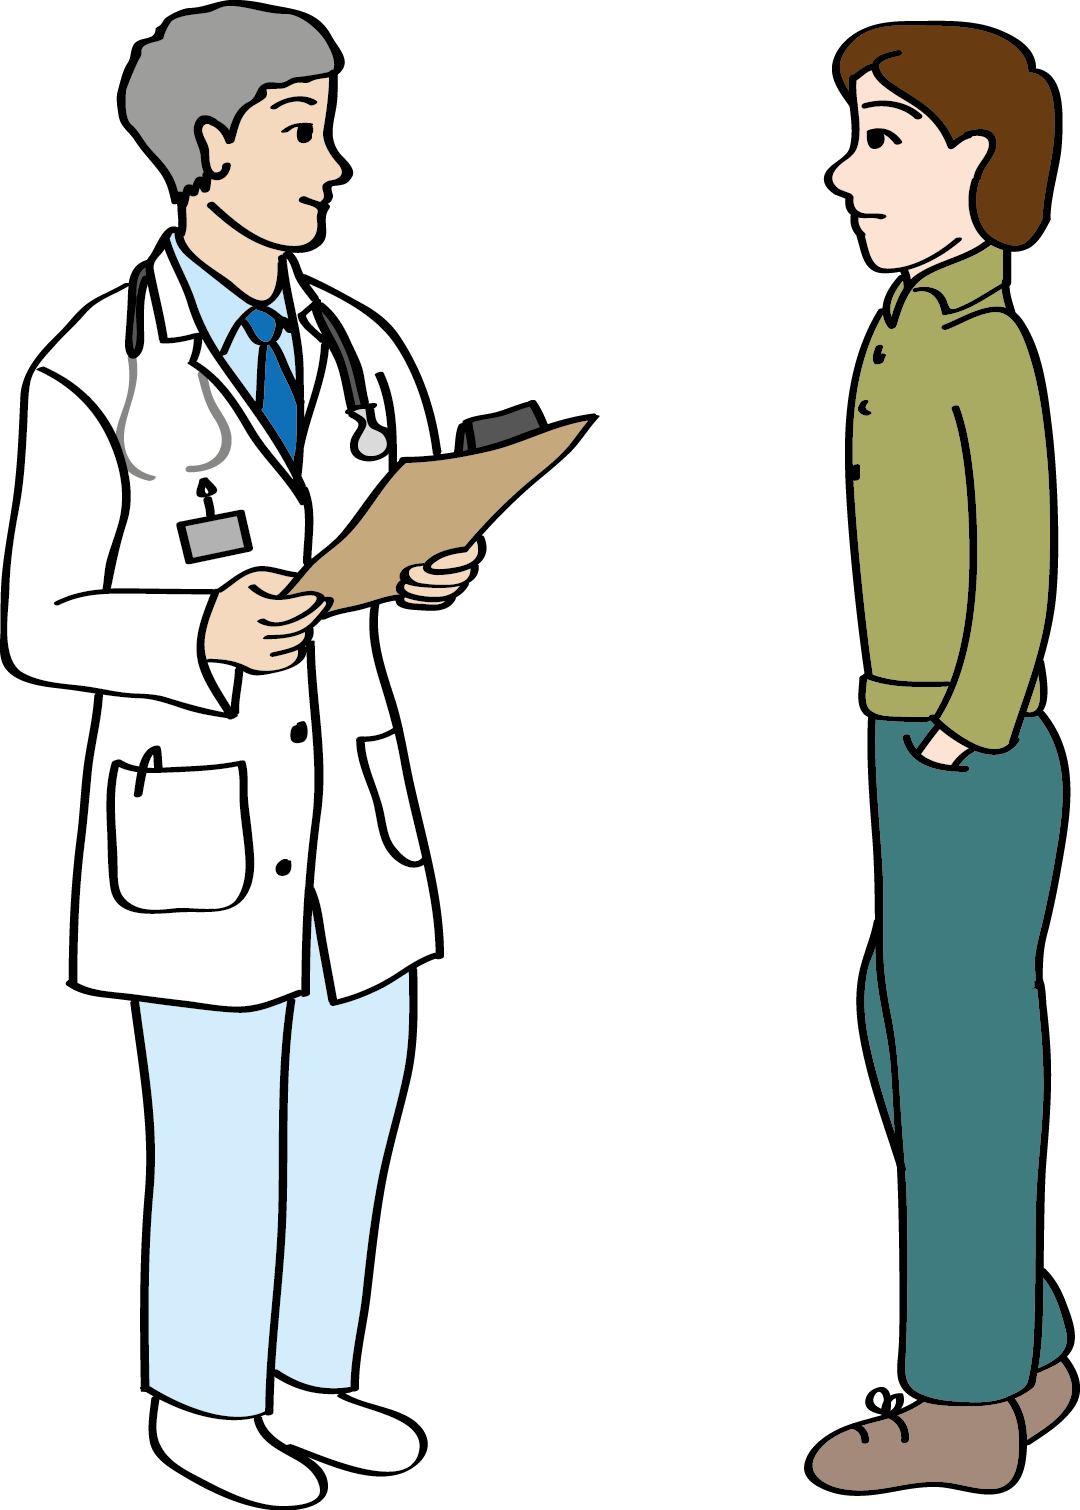 Ein Arzt im Gespräch mit einem Patienten